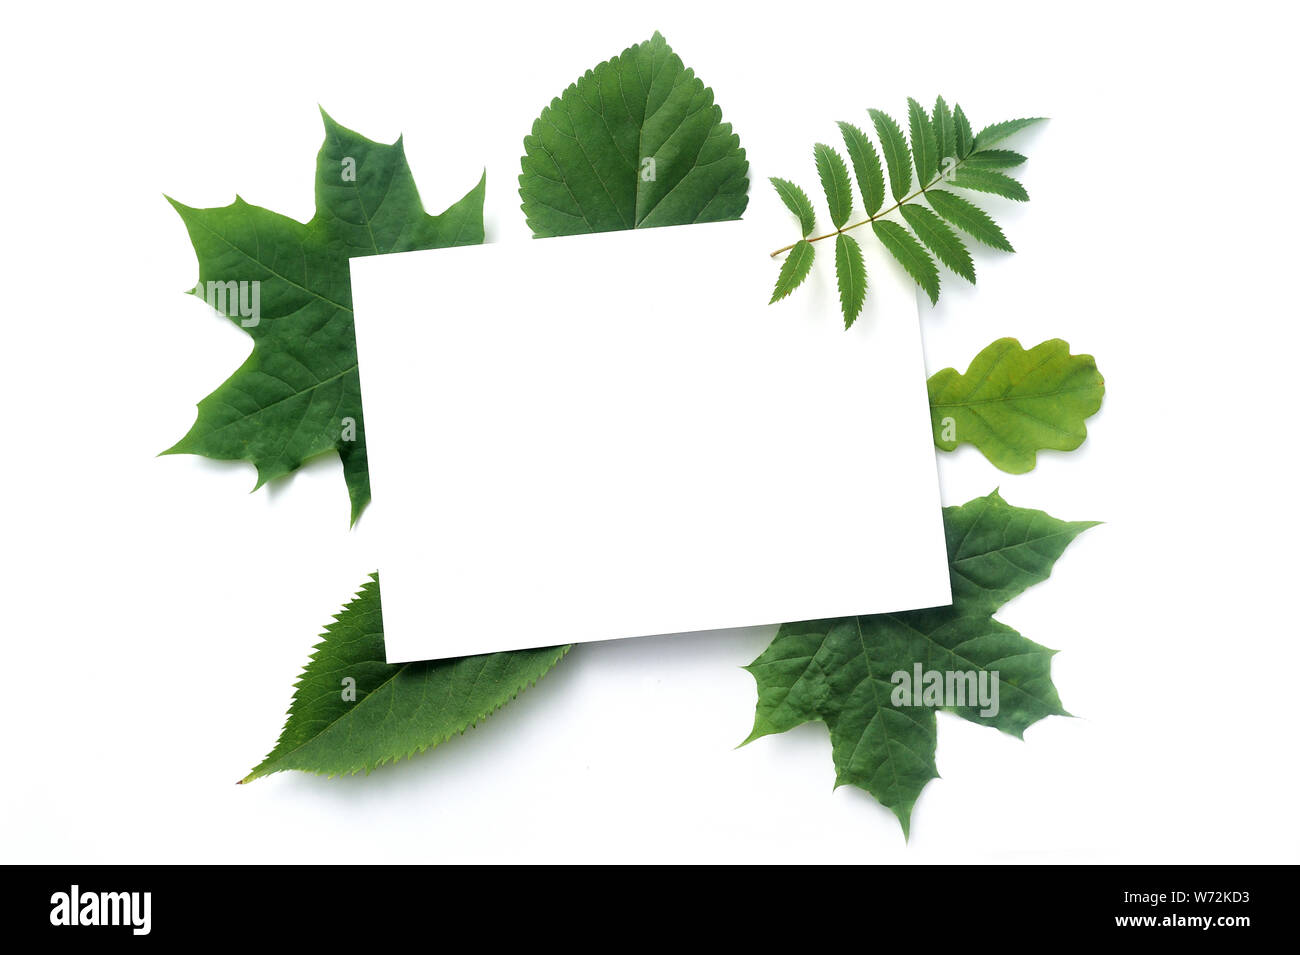 Herbstmockup grüne Blätter isoliert auf weißem Hintergrund. Draufsicht. Fall flach lag mit Kopie Spase Ihren Text Stockfoto